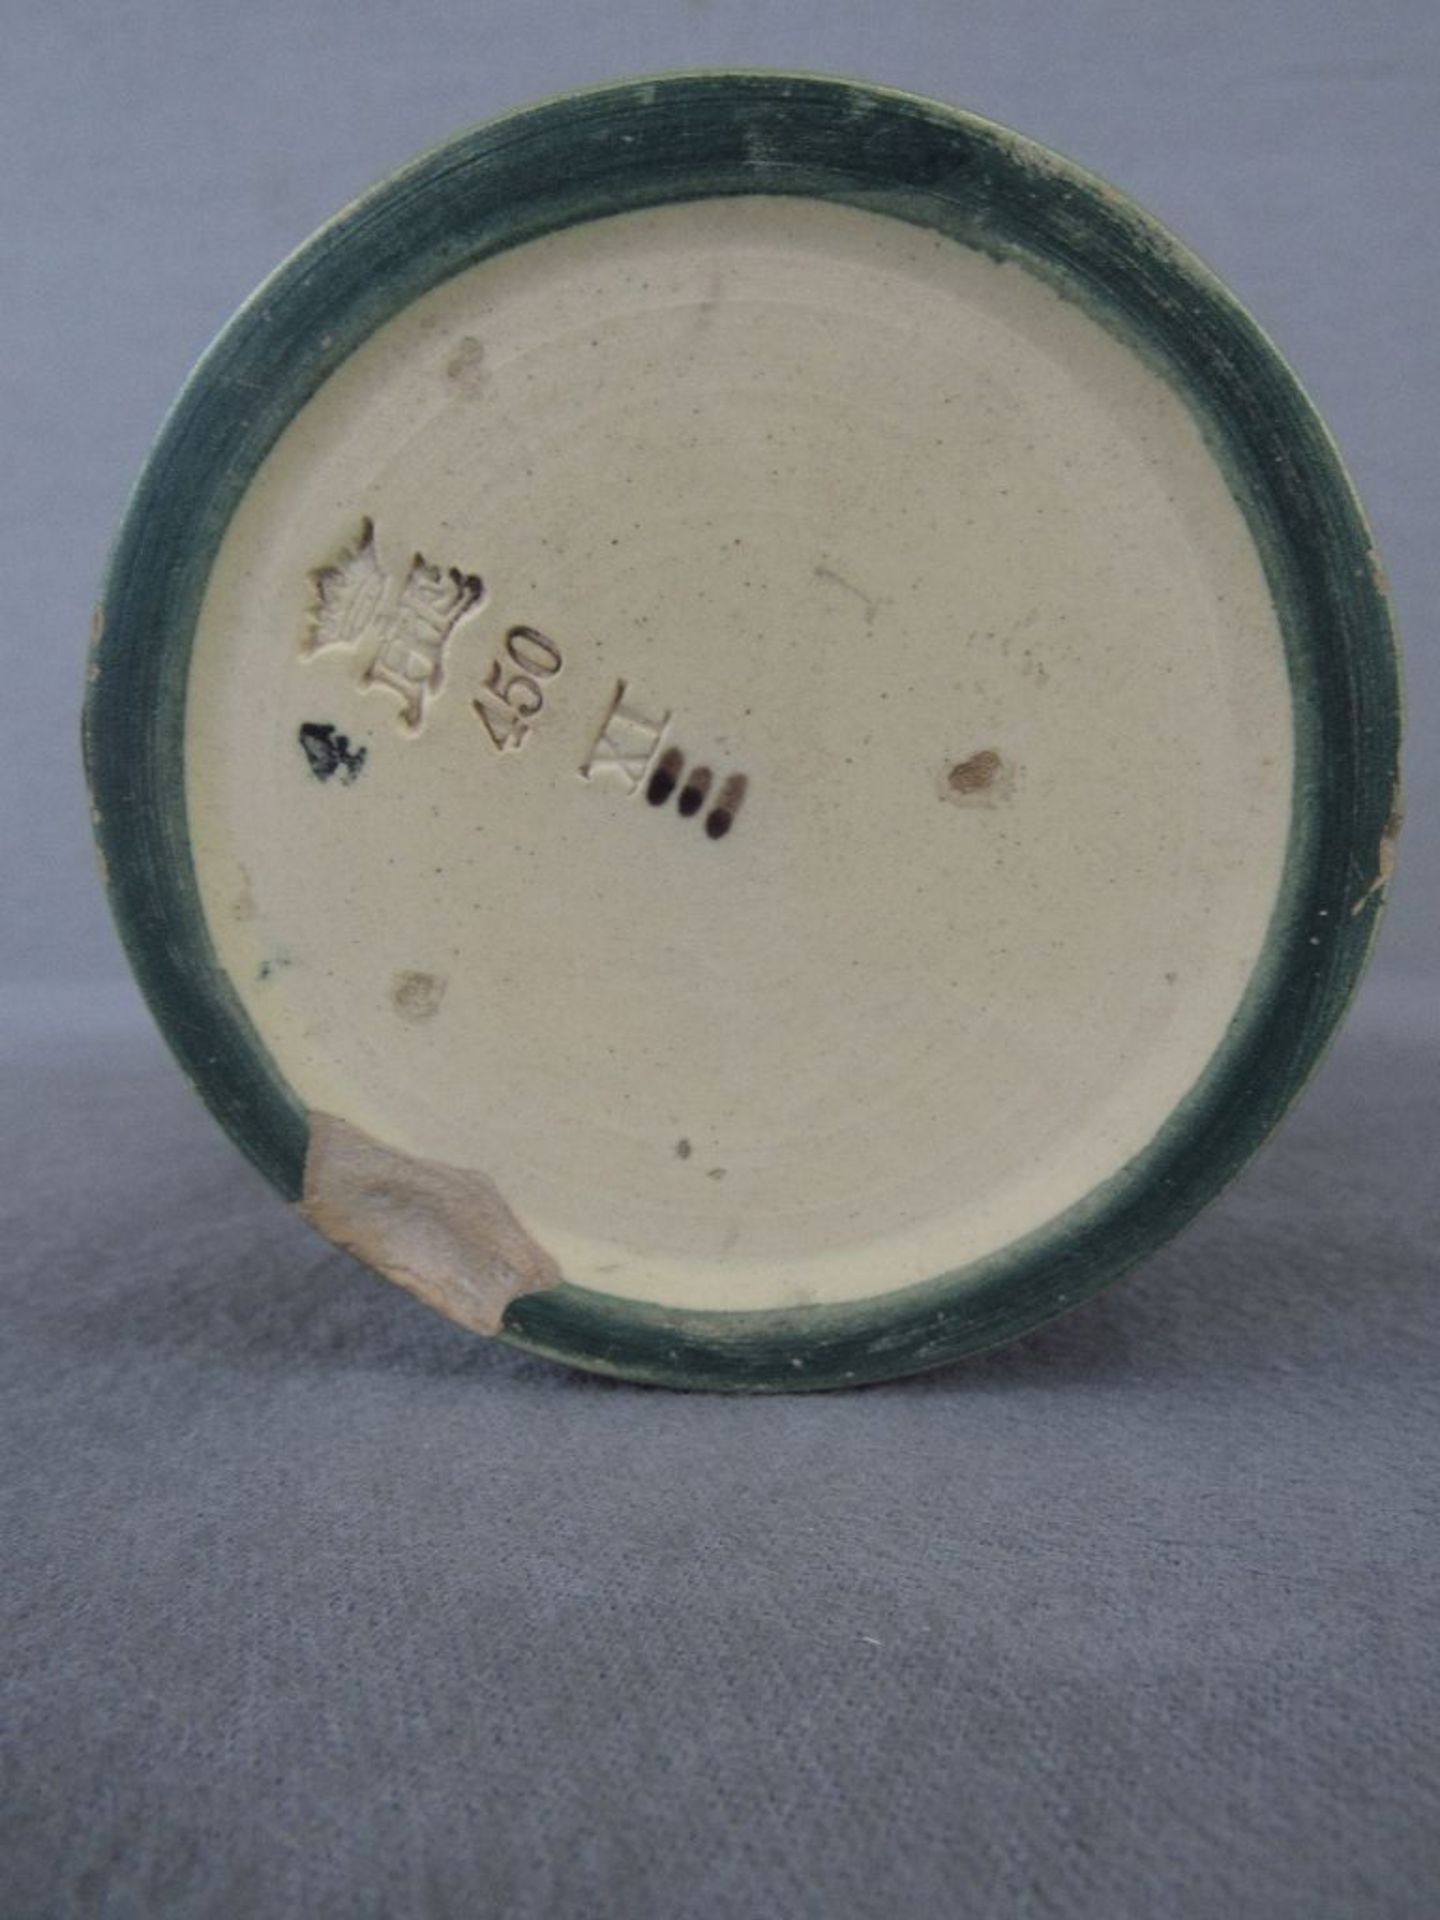 Vase Keramik Jugendstil Enke Ypsen Dänemark gemarkt 22cm hoch am Stand leicht gechipt - Bild 3 aus 6